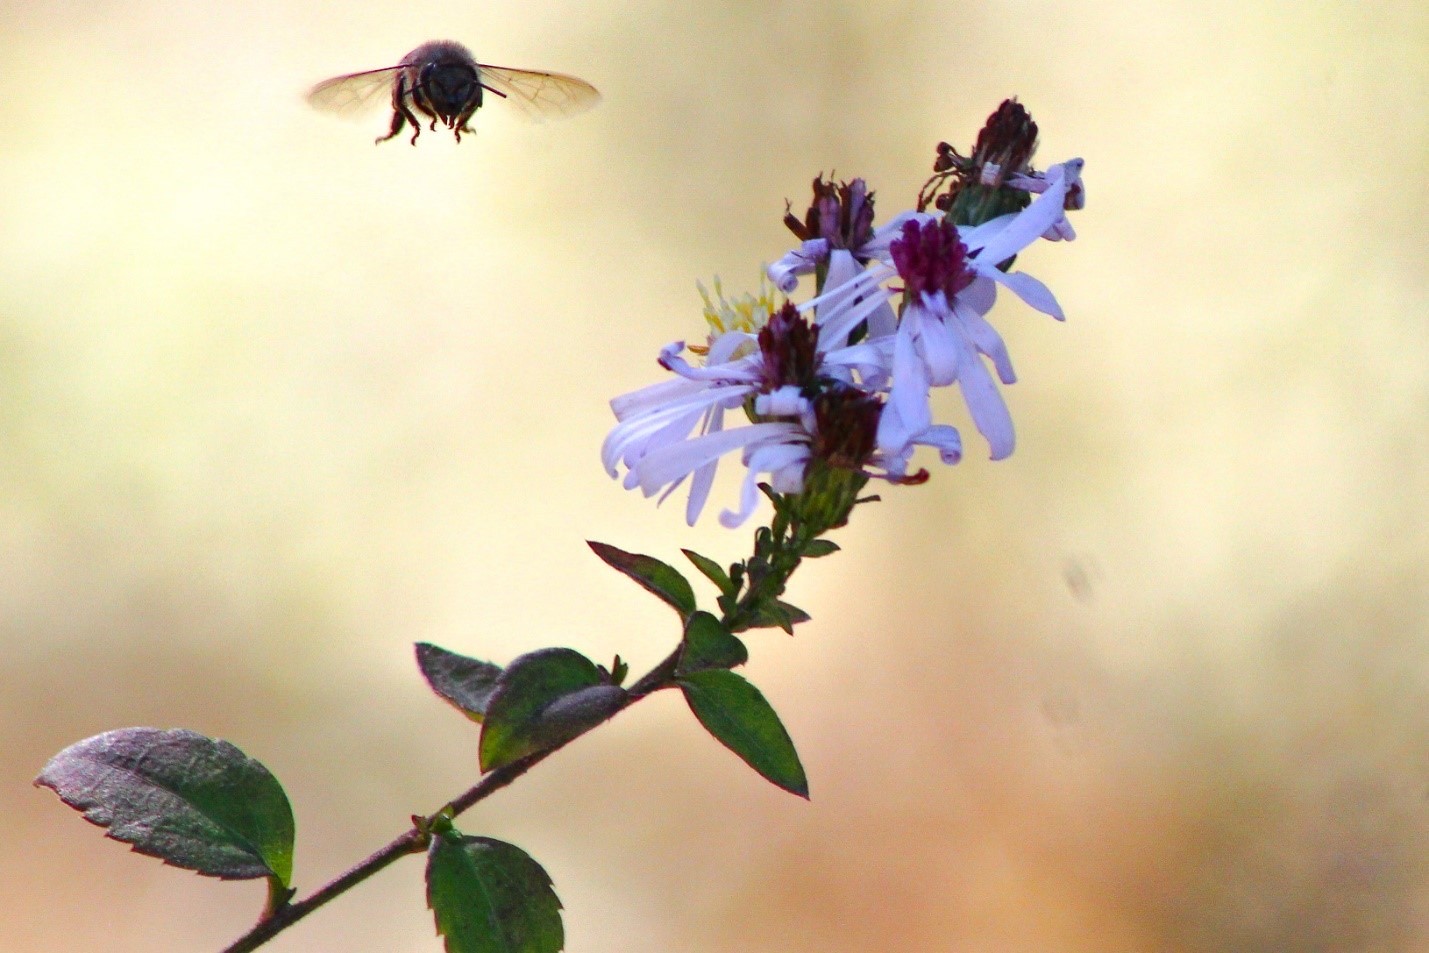 Bee buzzes a nearby flower